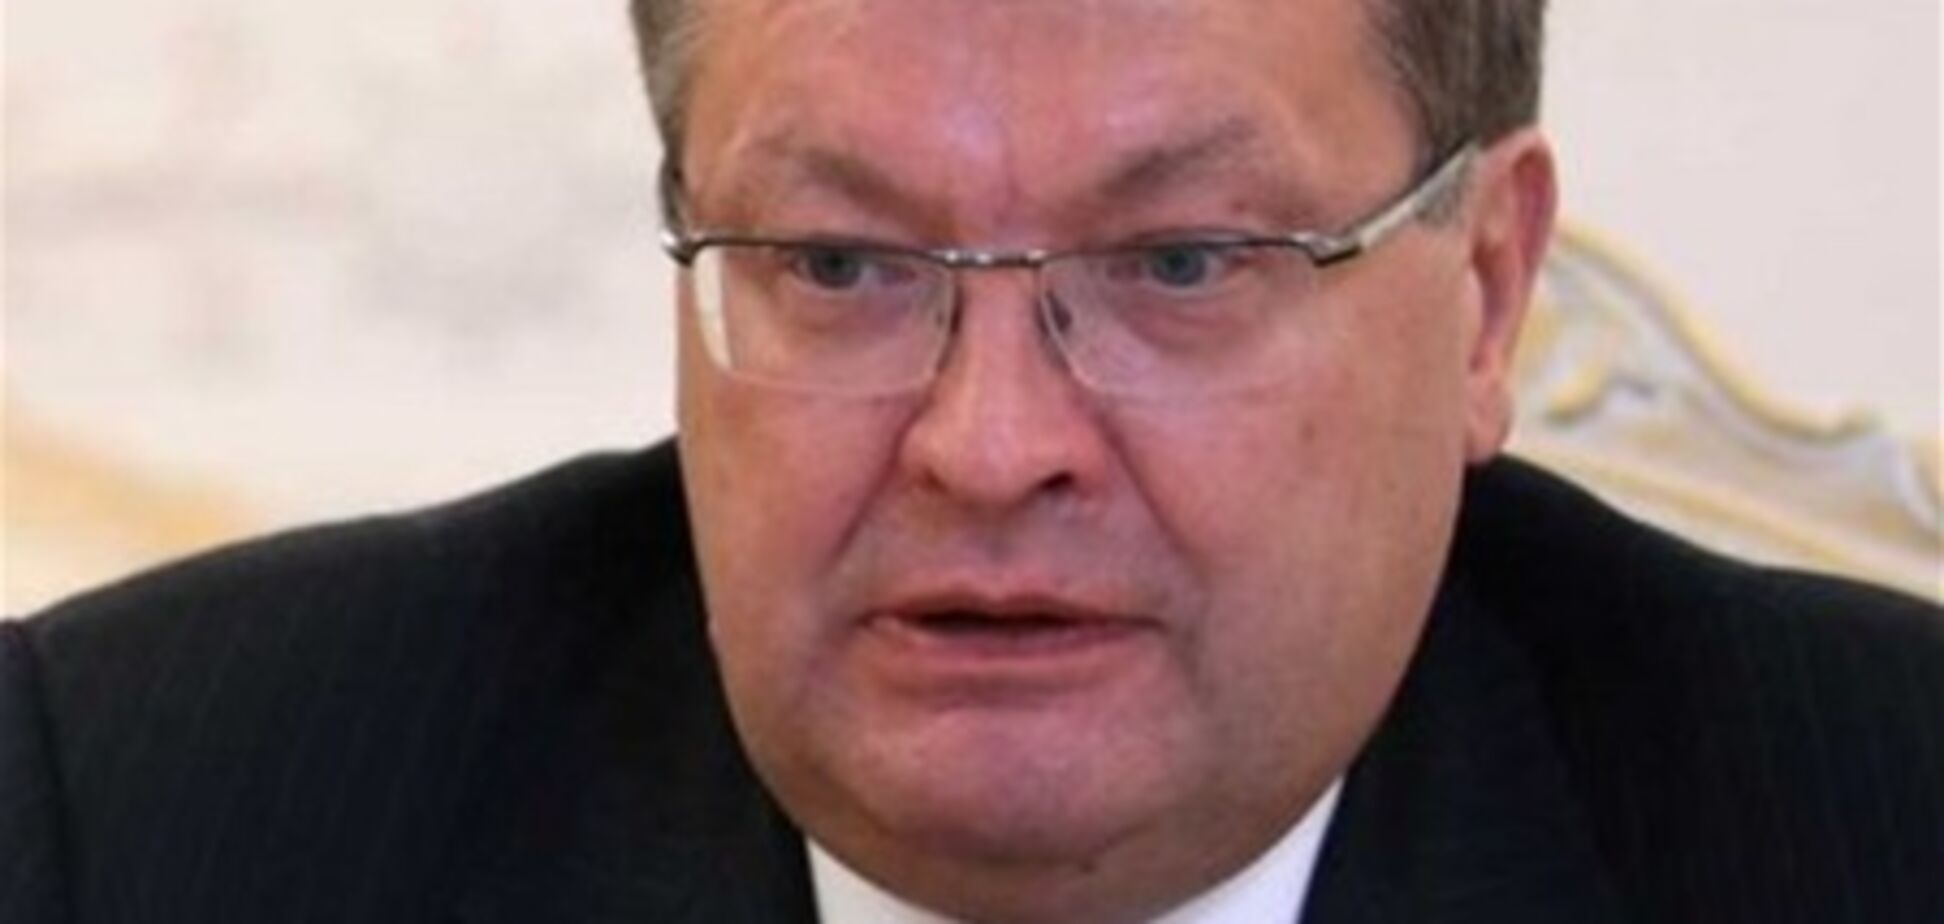 МЗС України вимагає від головсанлікаря РФ публічних вибачень